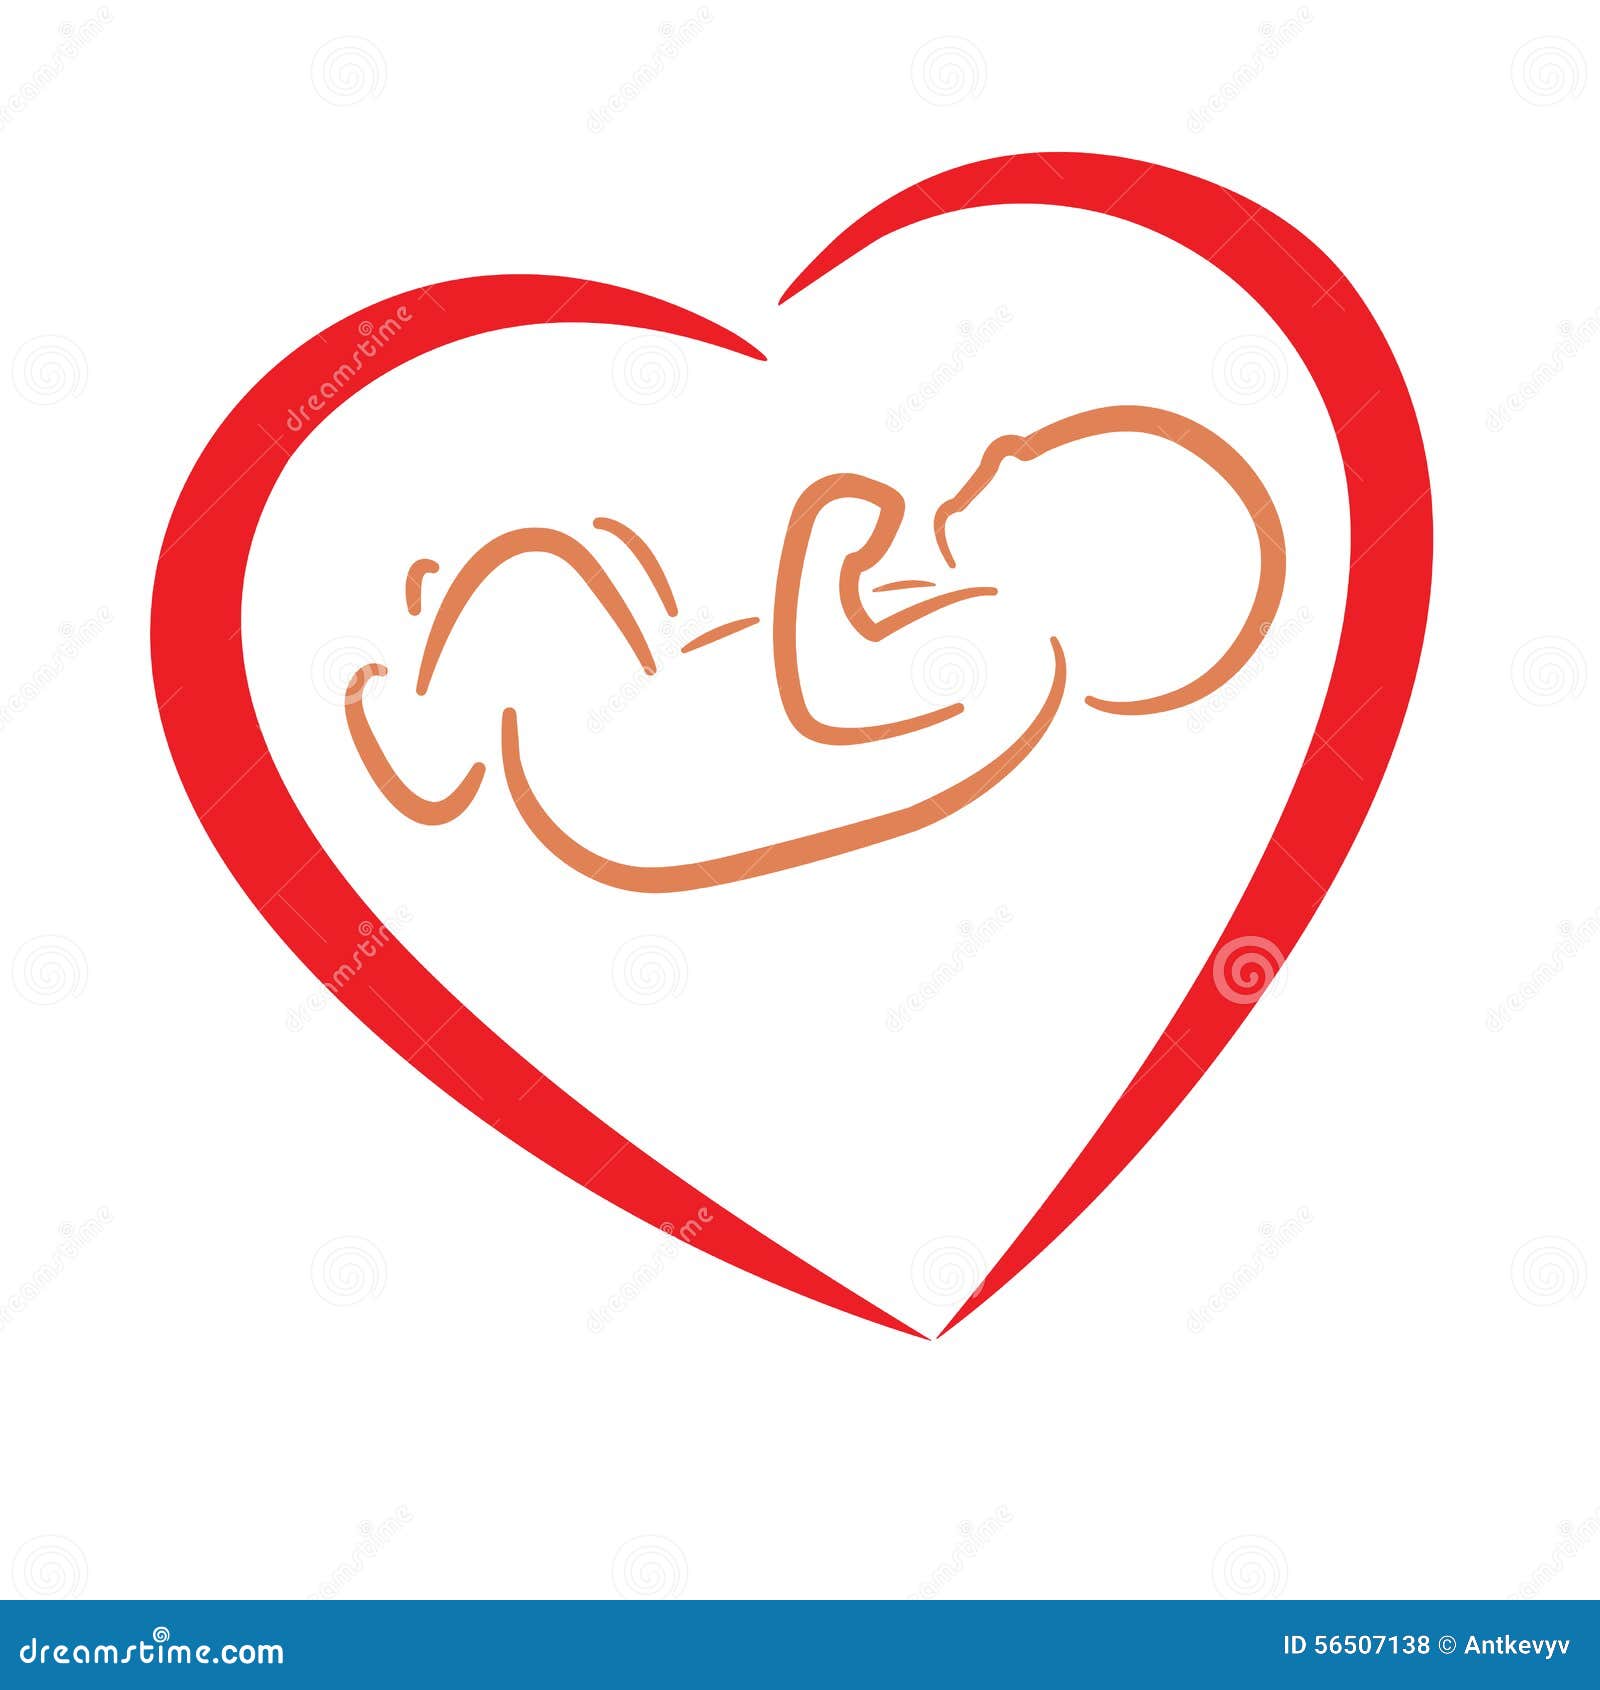 Dos Huellas De Bebé En Forma De Corazón. Símbolo Rojo Y Azul De Un